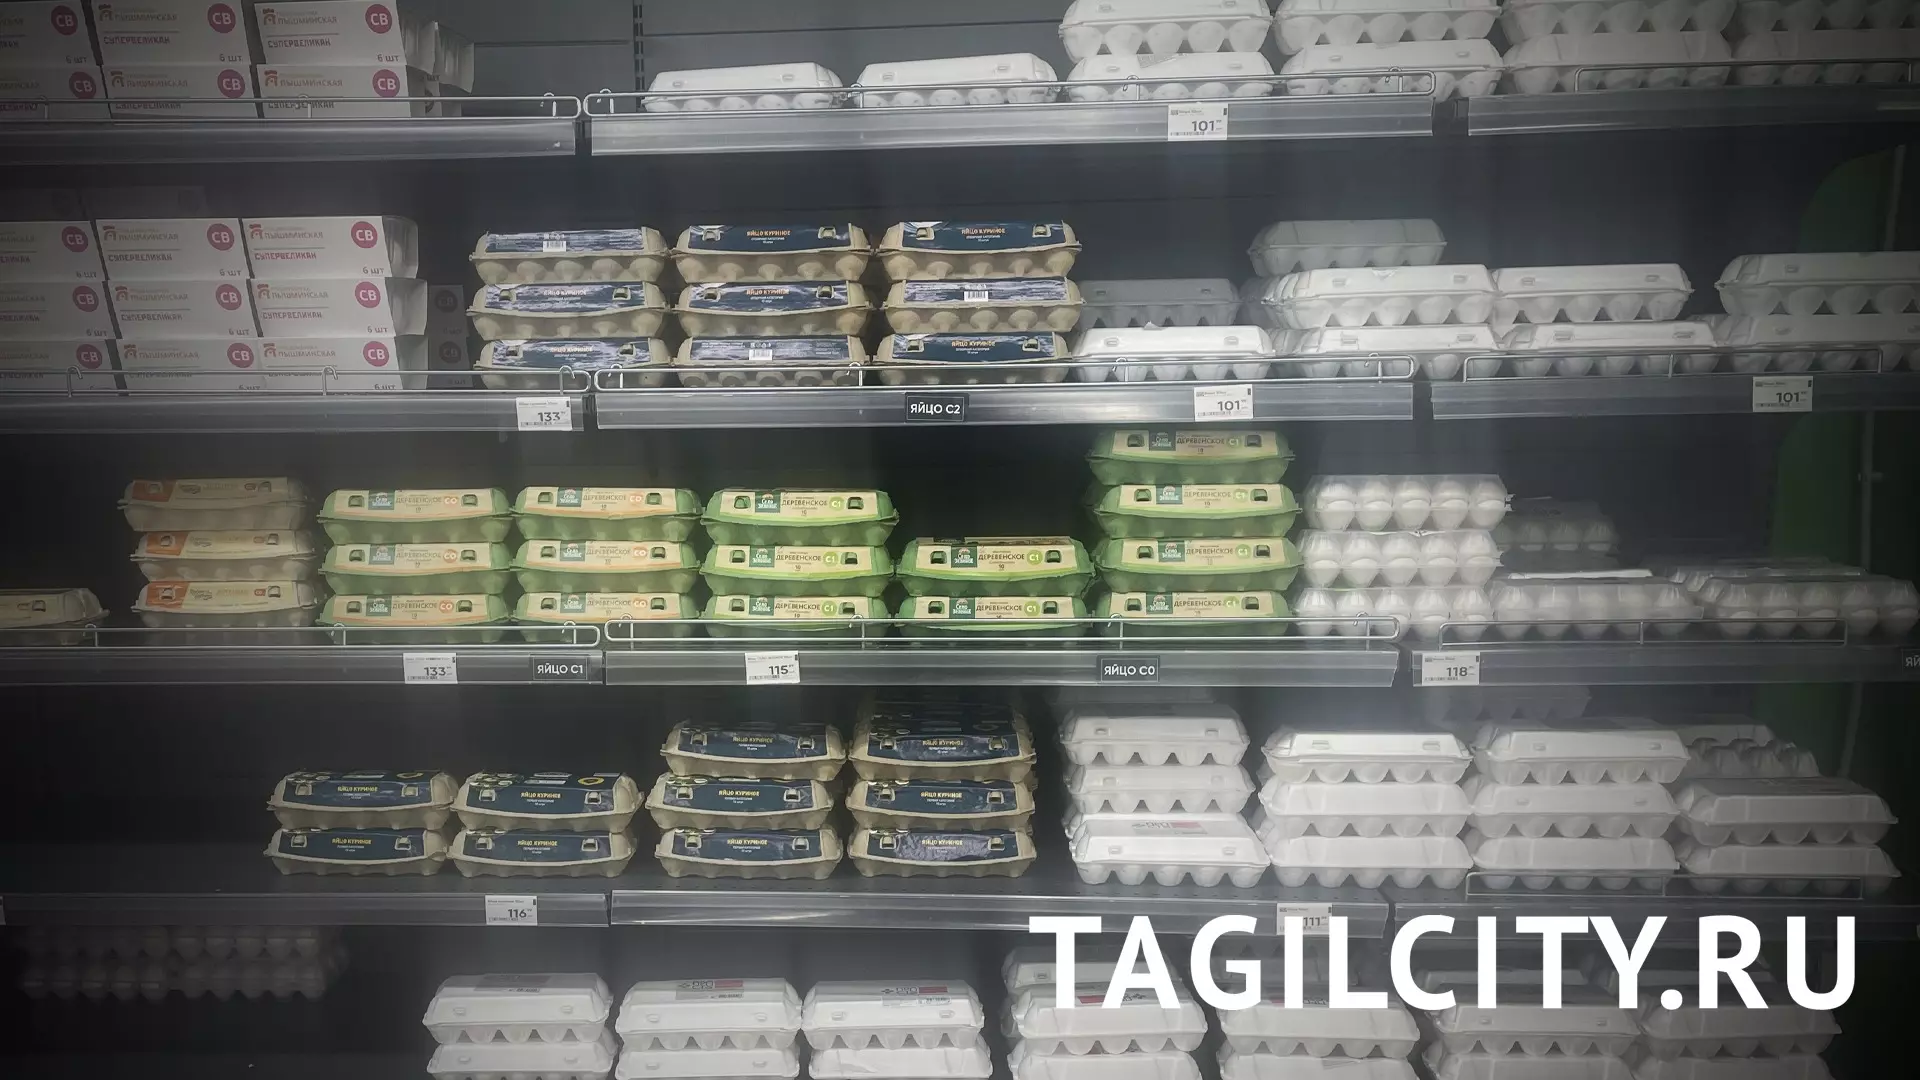 Цены на яйца в Нижнем Тагиле